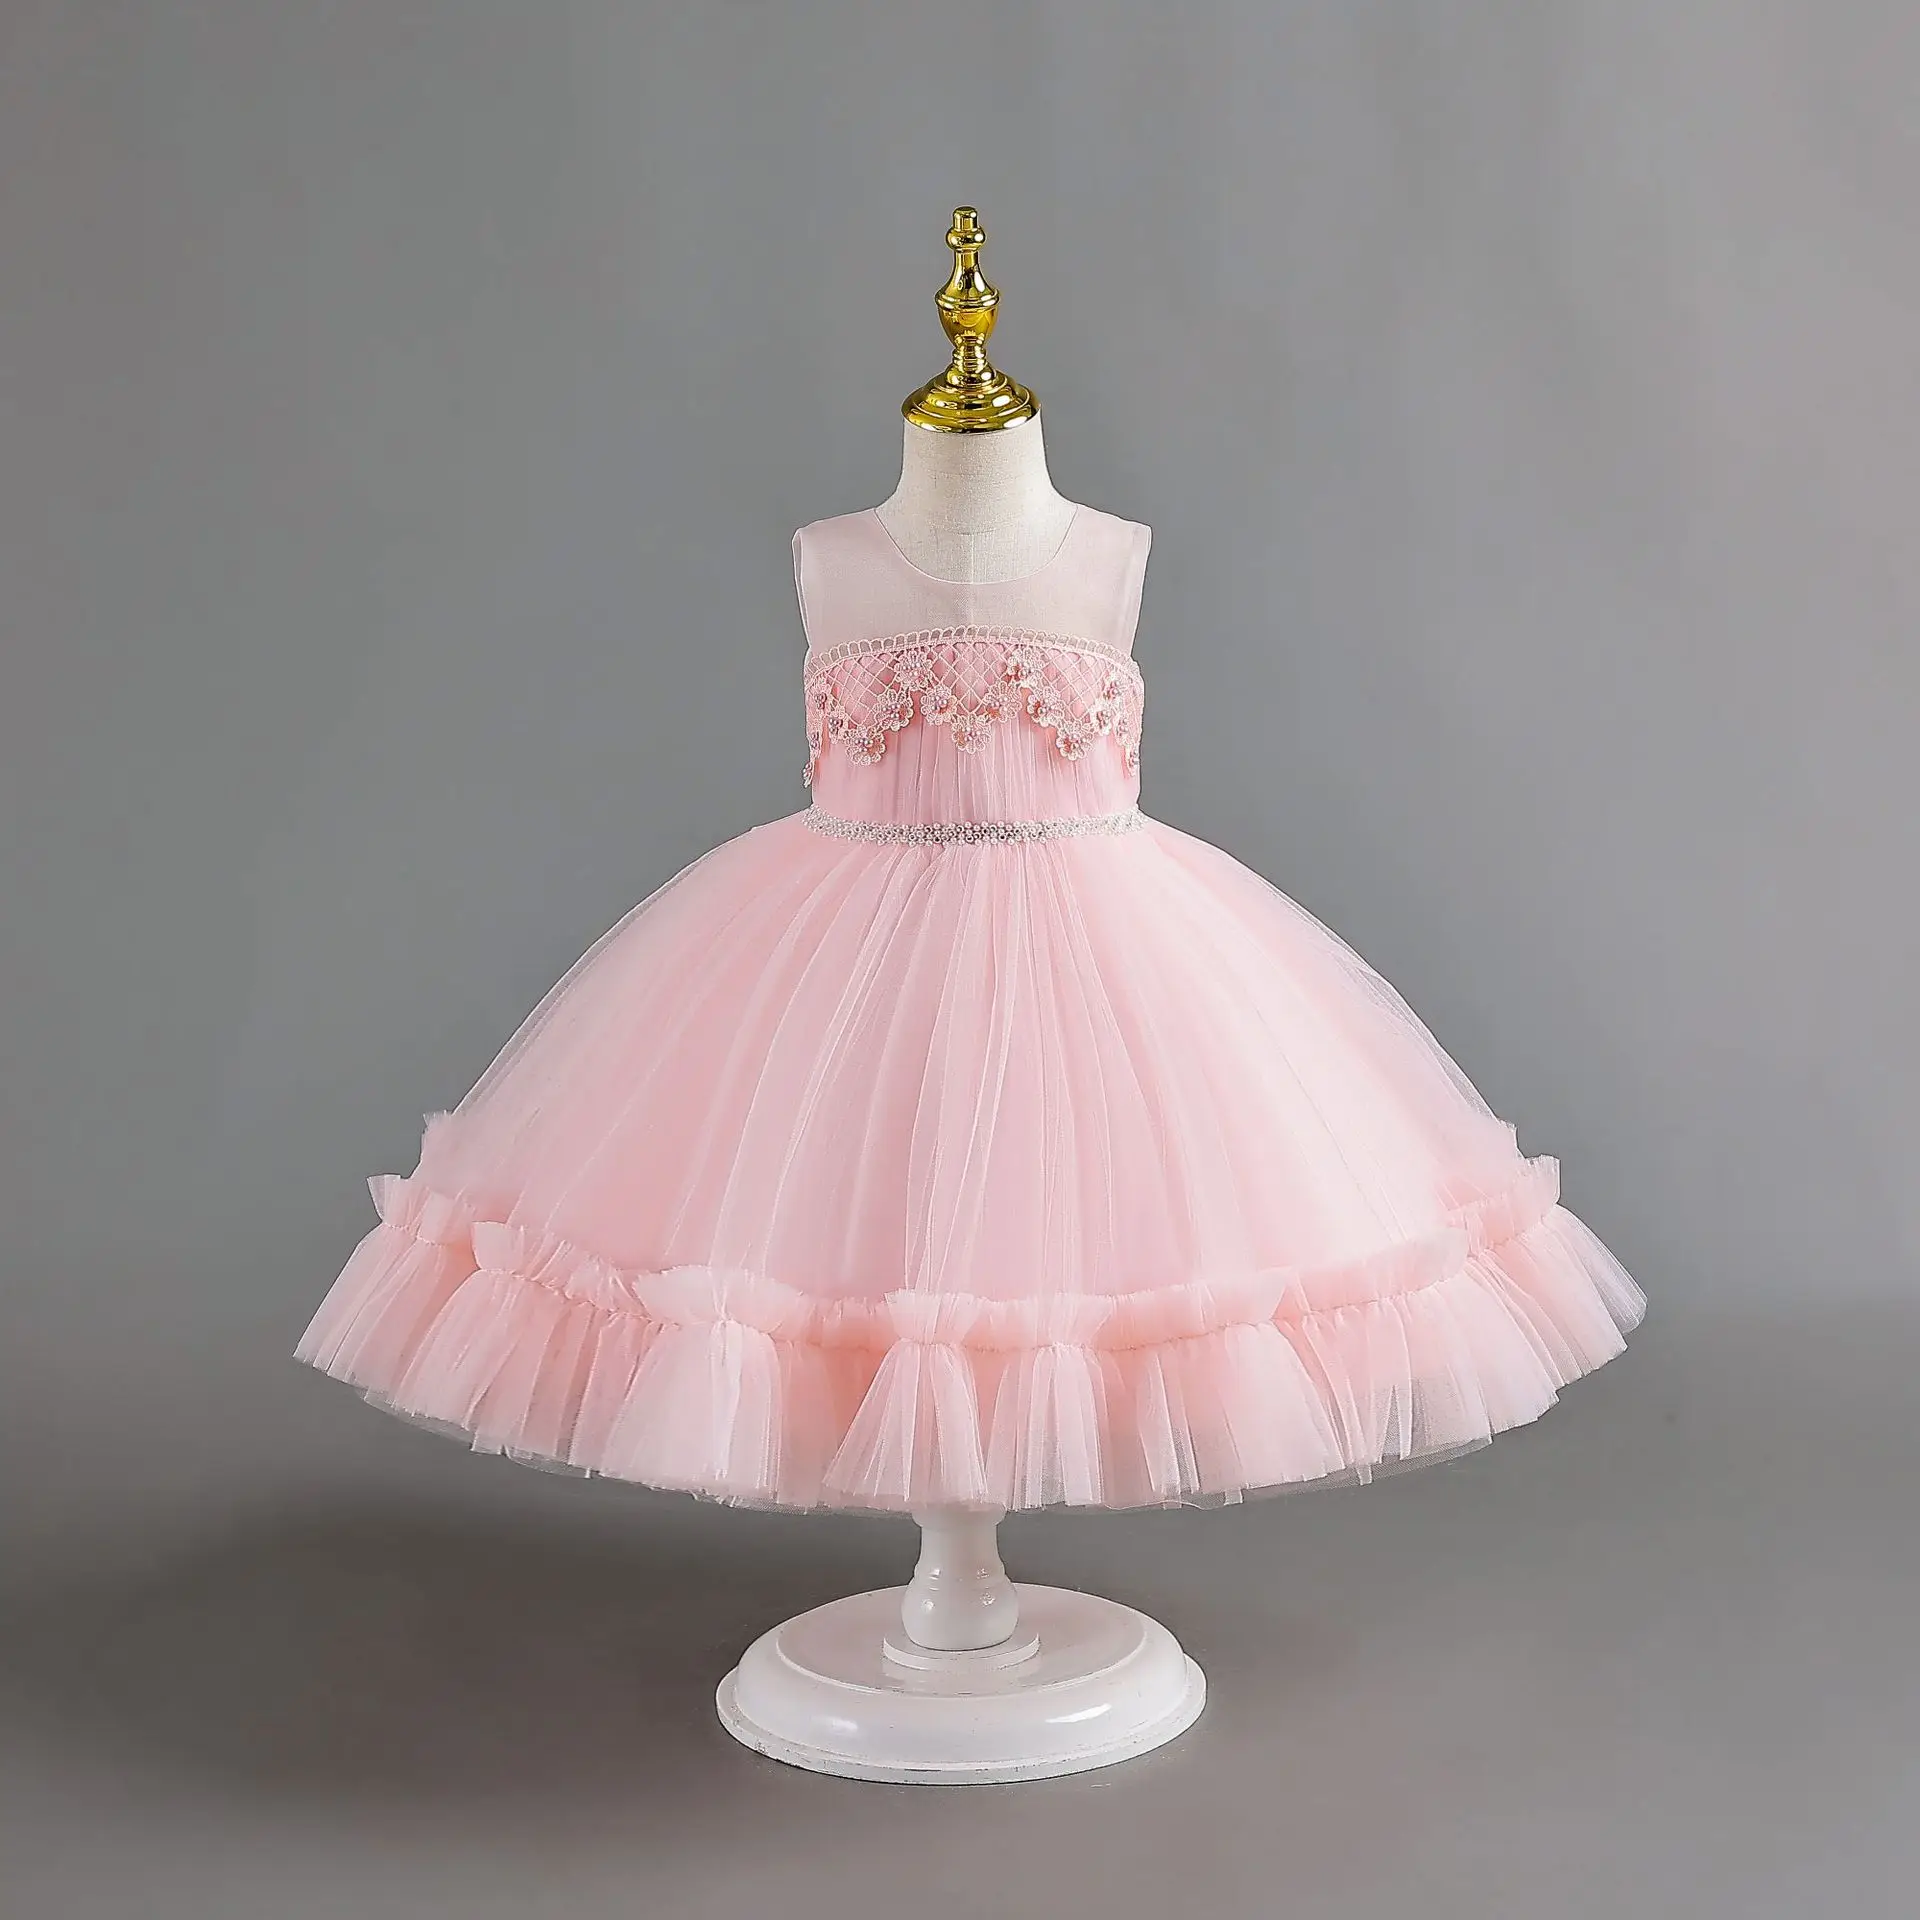 

Пышное детское платье с жемчужинами Детские платья с цветочной аппликацией детское платье принцессы для рождественской вечеринки для детей от 0 до 12 месяцев